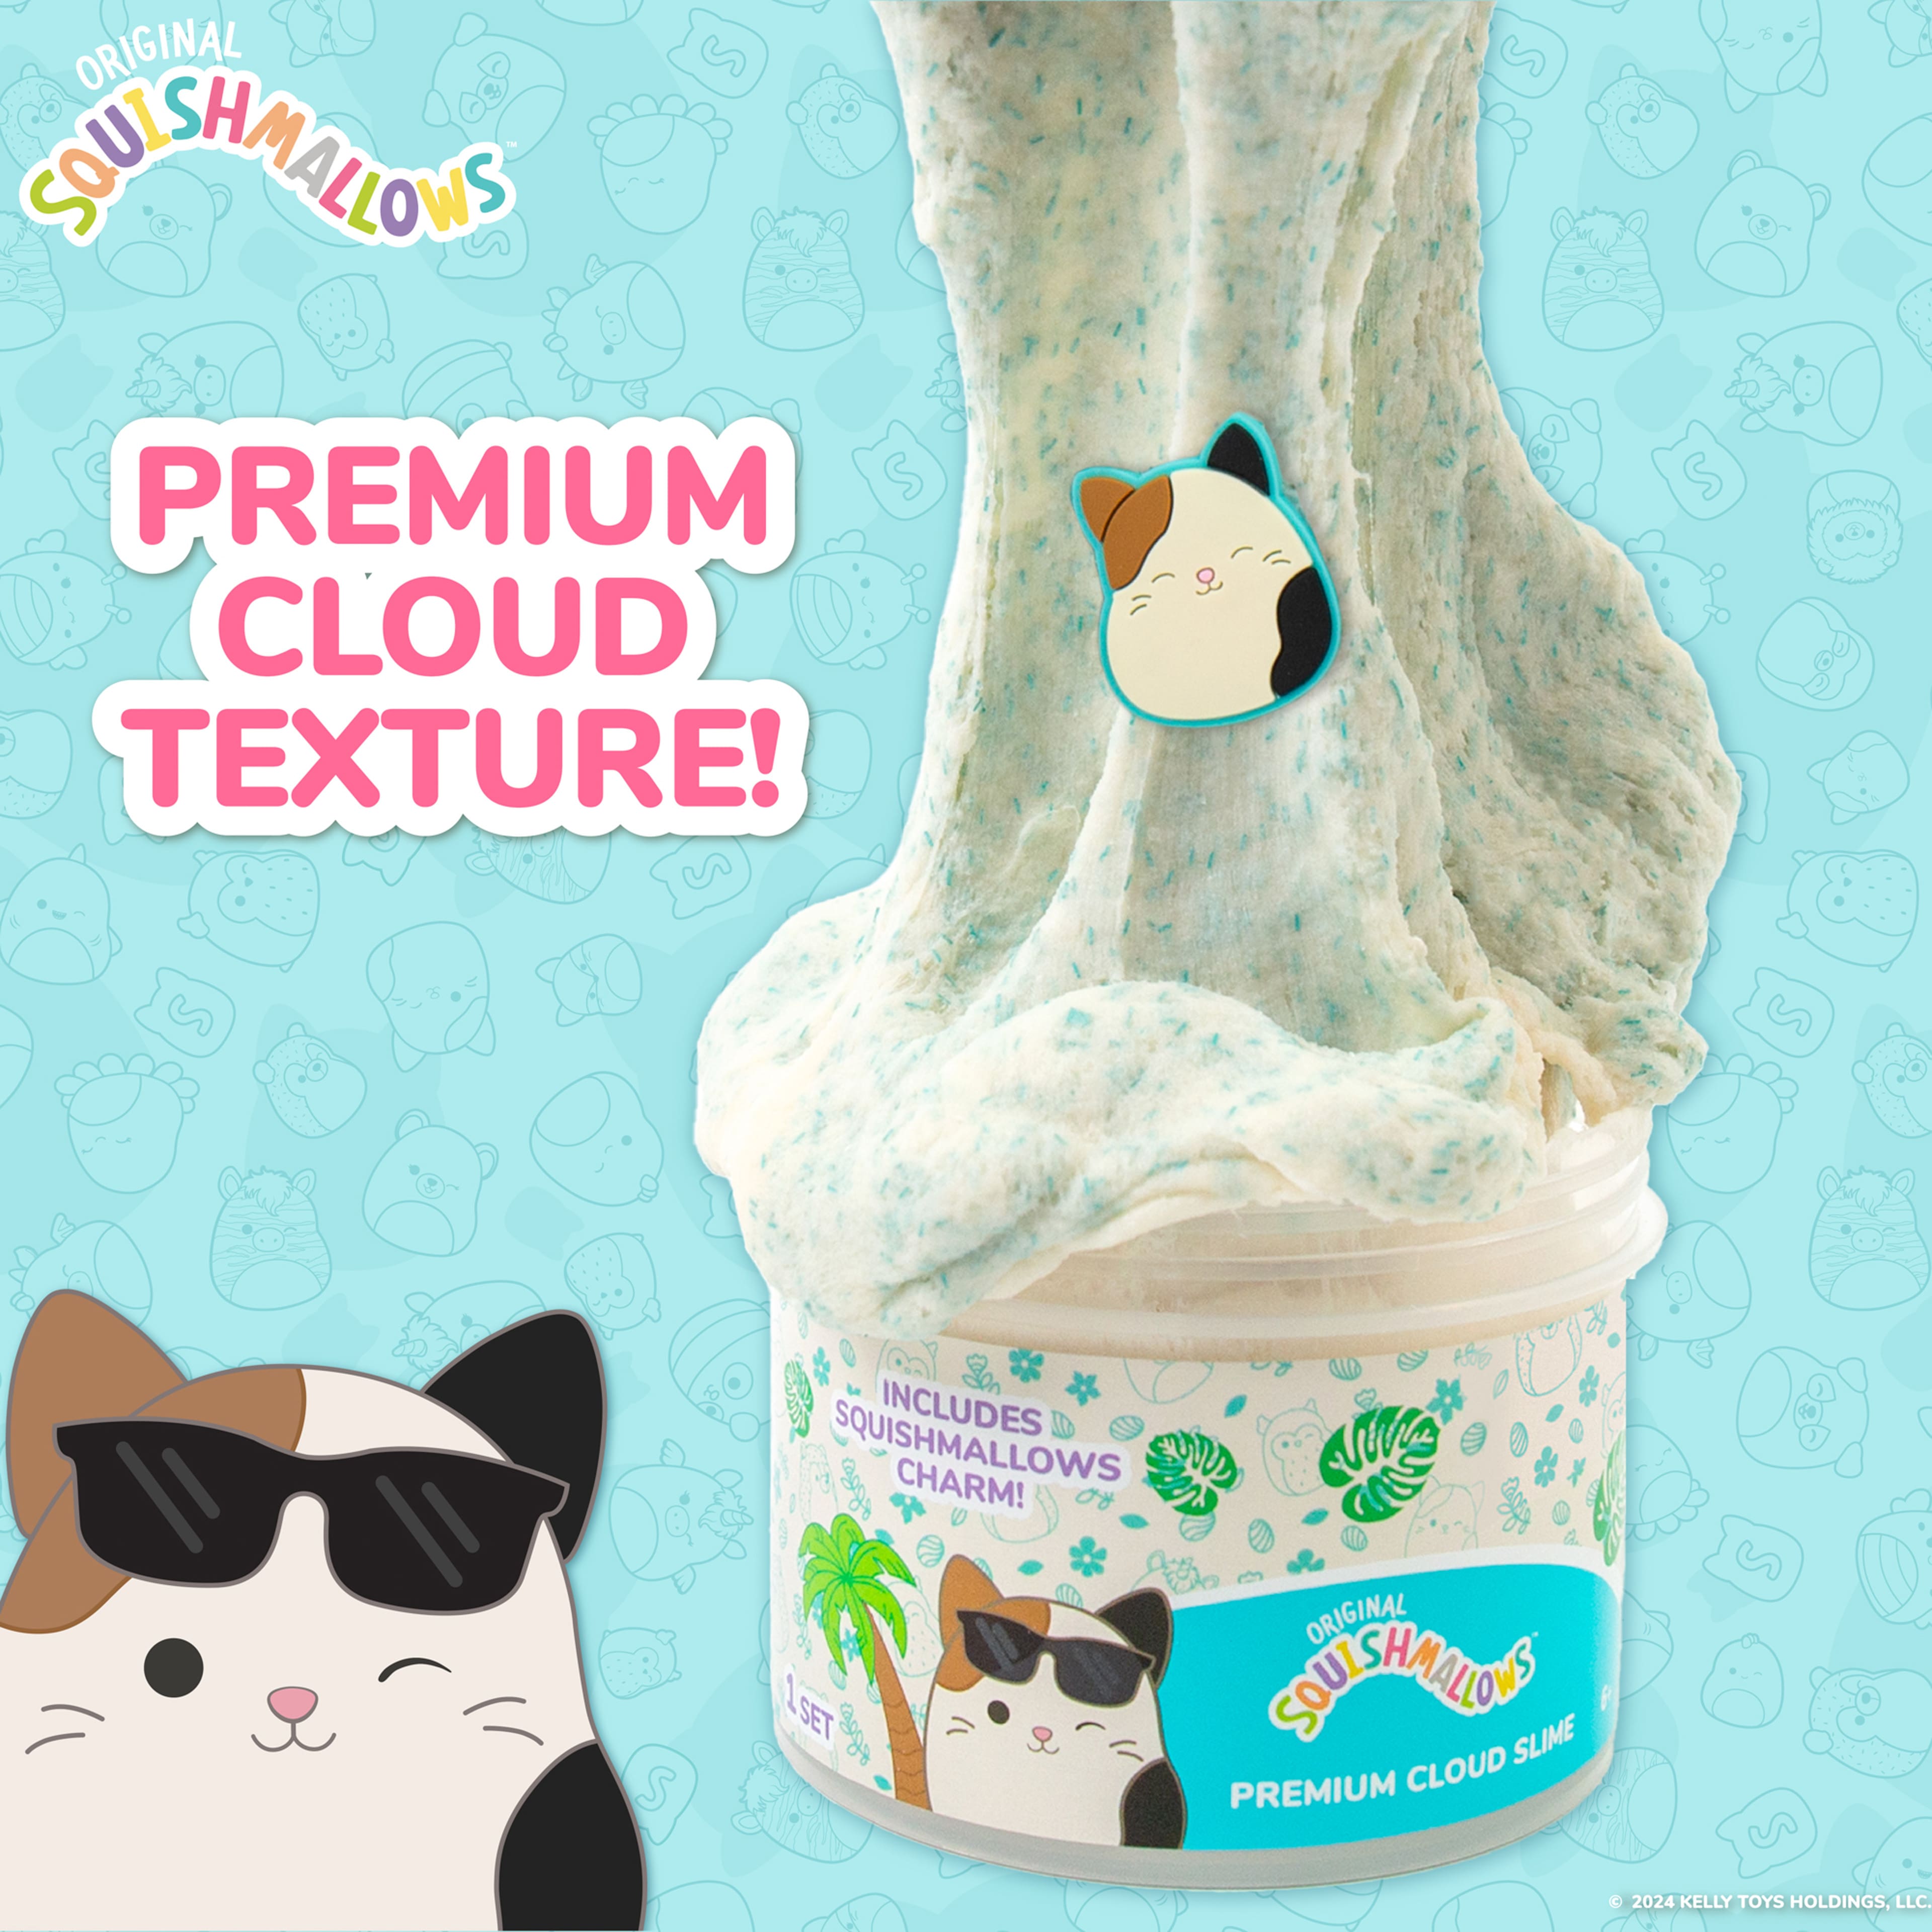 Original Squishmallows&#x2122; Cam the Cat Premium Cloud Slime, Coconut Scented